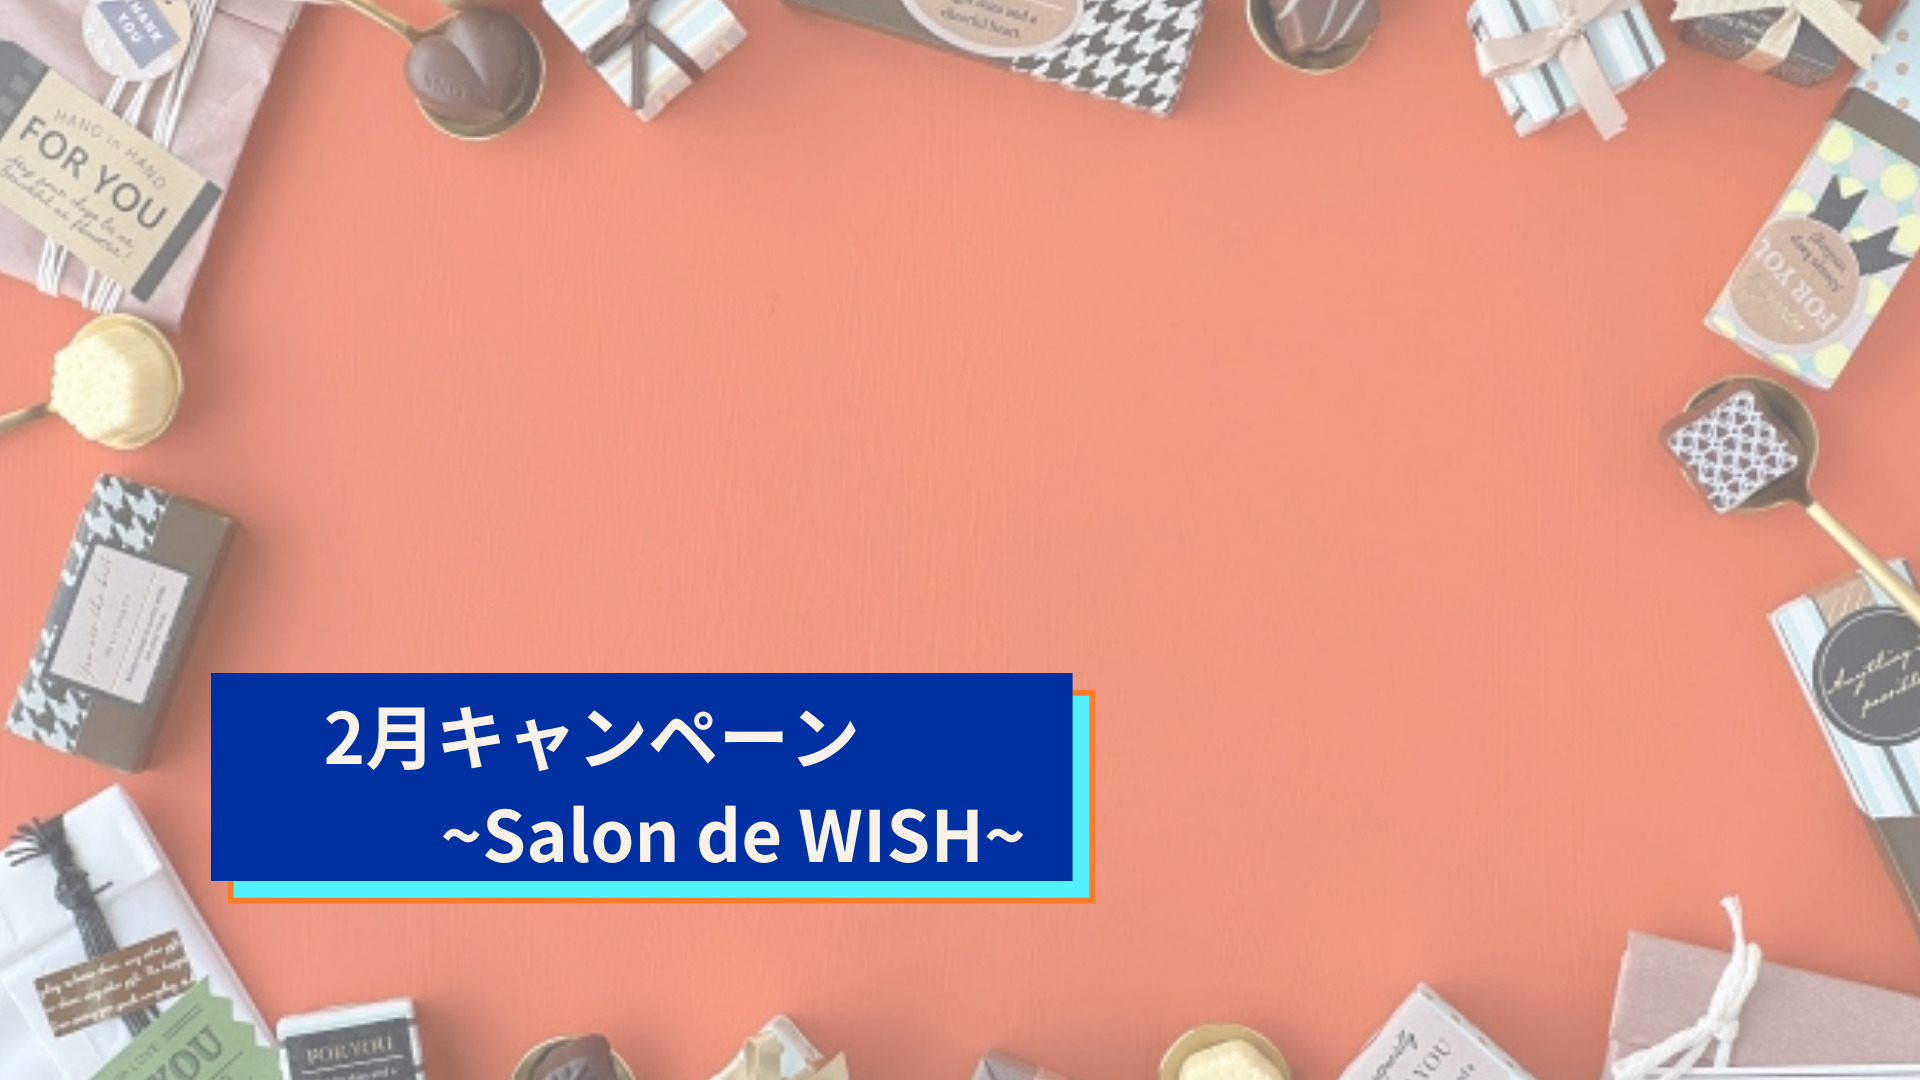 2月キャンペーン~Salon de WISH~